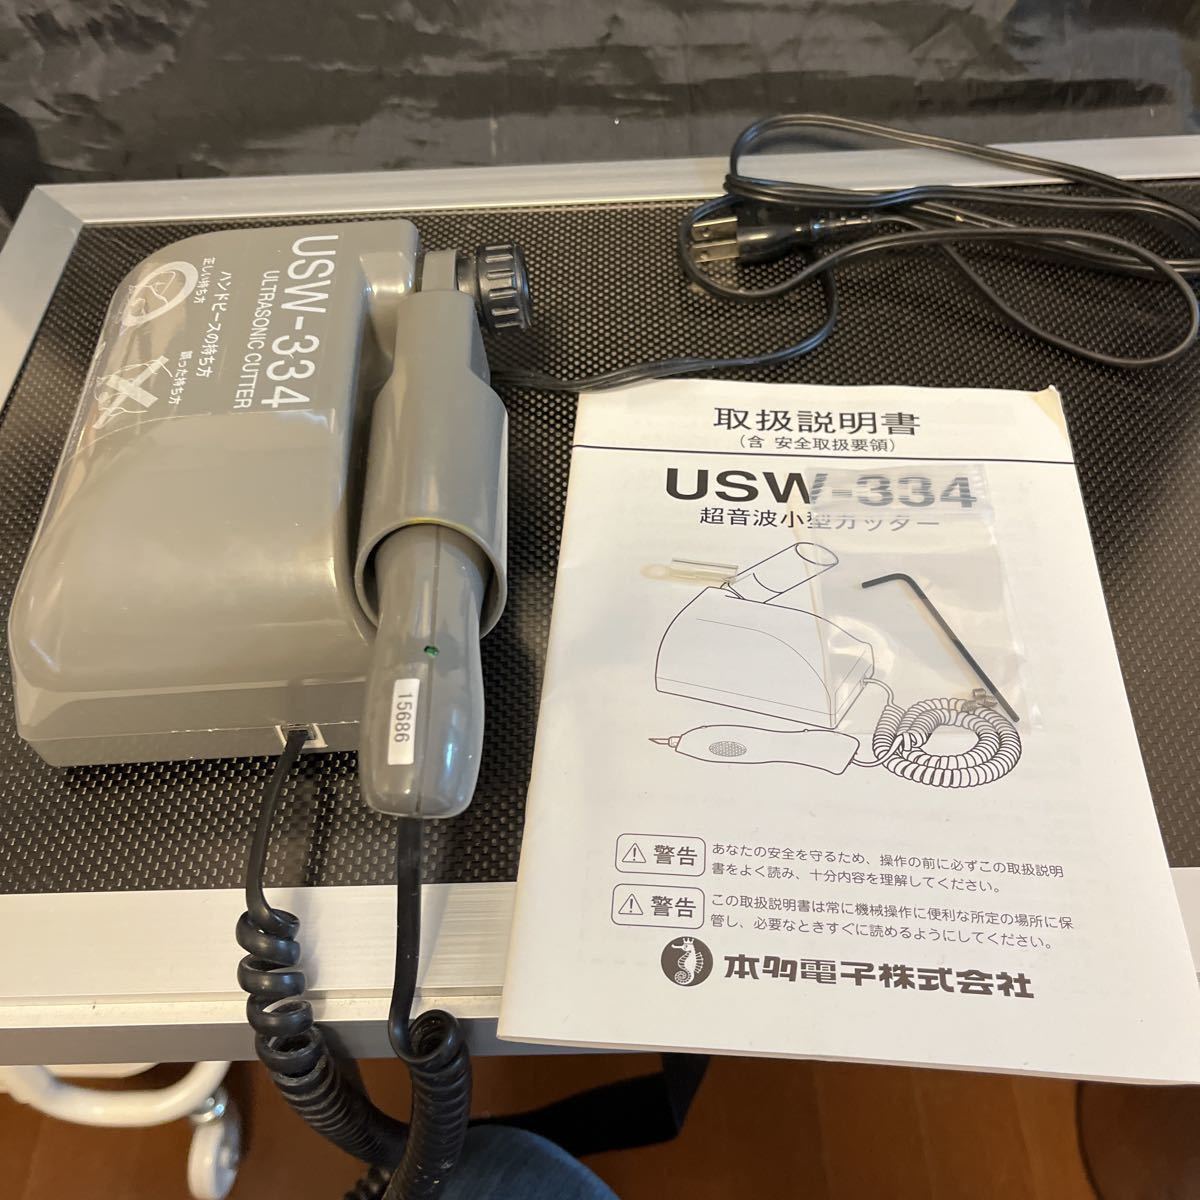 超音波カッター USW-334 - 模型製作用品